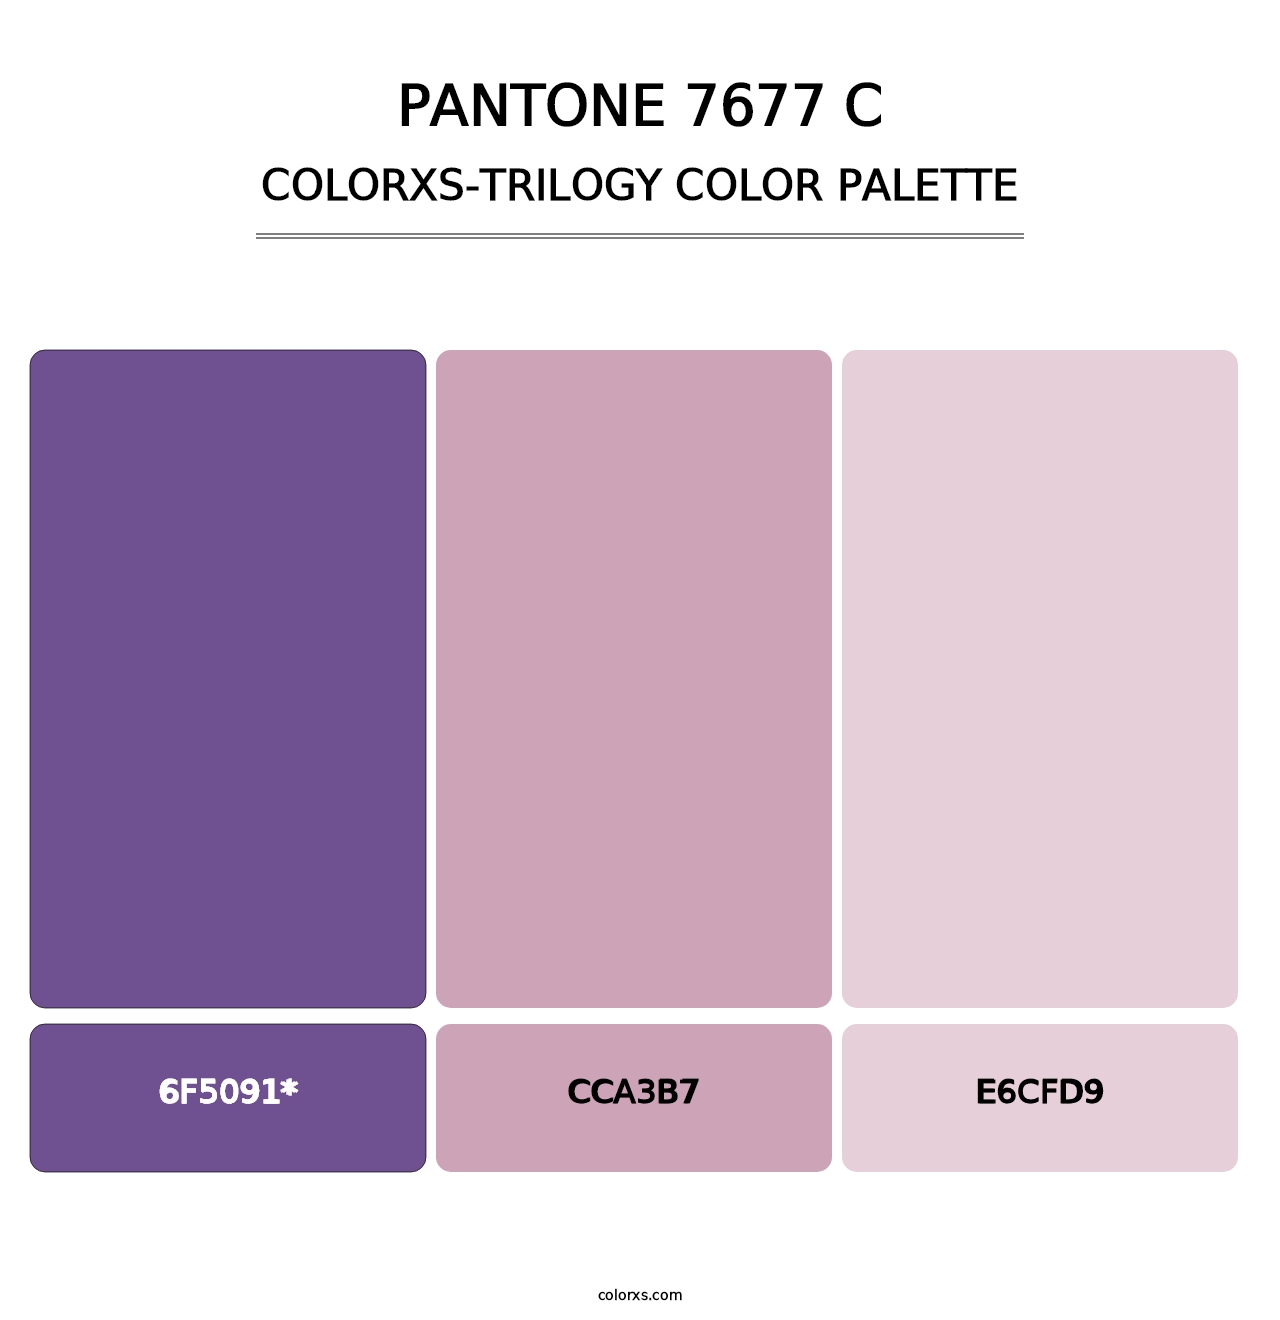 PANTONE 7677 C - Colorxs Trilogy Palette